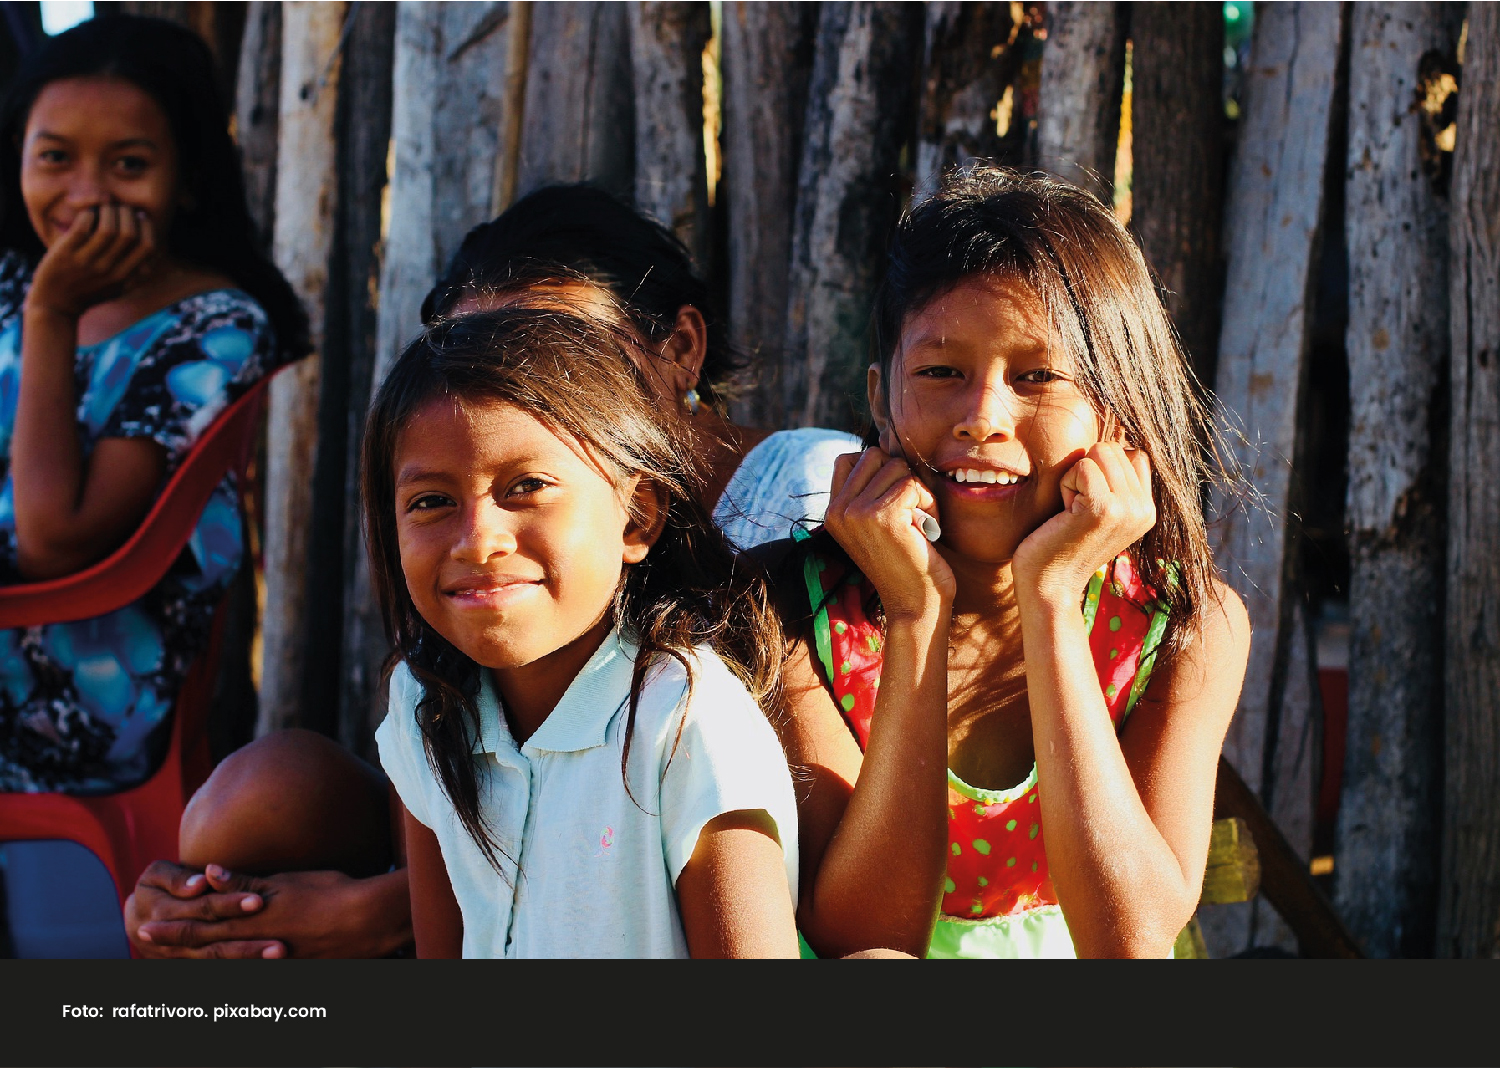 Foto de niñas indígenas Wayuu. Comisión de la verdad: afectaciones vividas por las mujeres de Perú y Colombia. - Cider | Uniandes